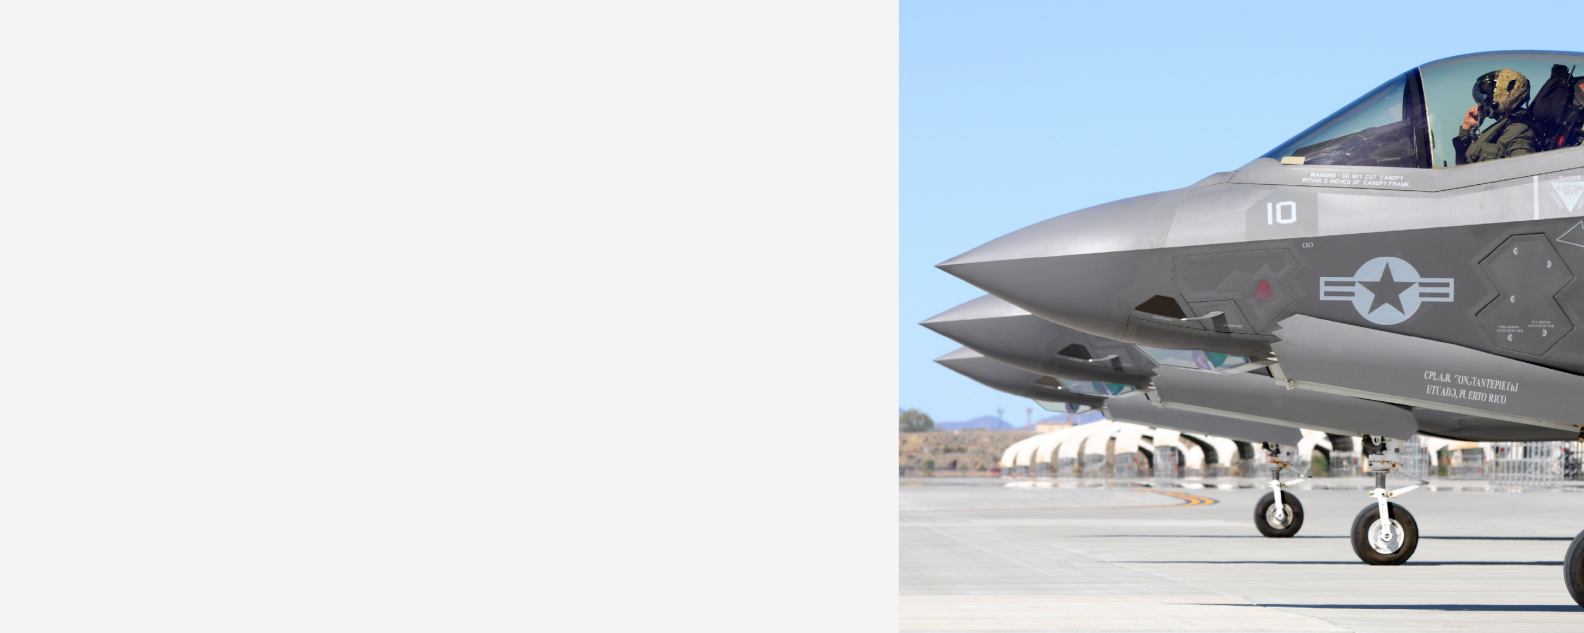 三架 VMFA-121 的 F-35B Lightning II 号准备从亚利桑那州尤马的海军陆战队航空站起飞